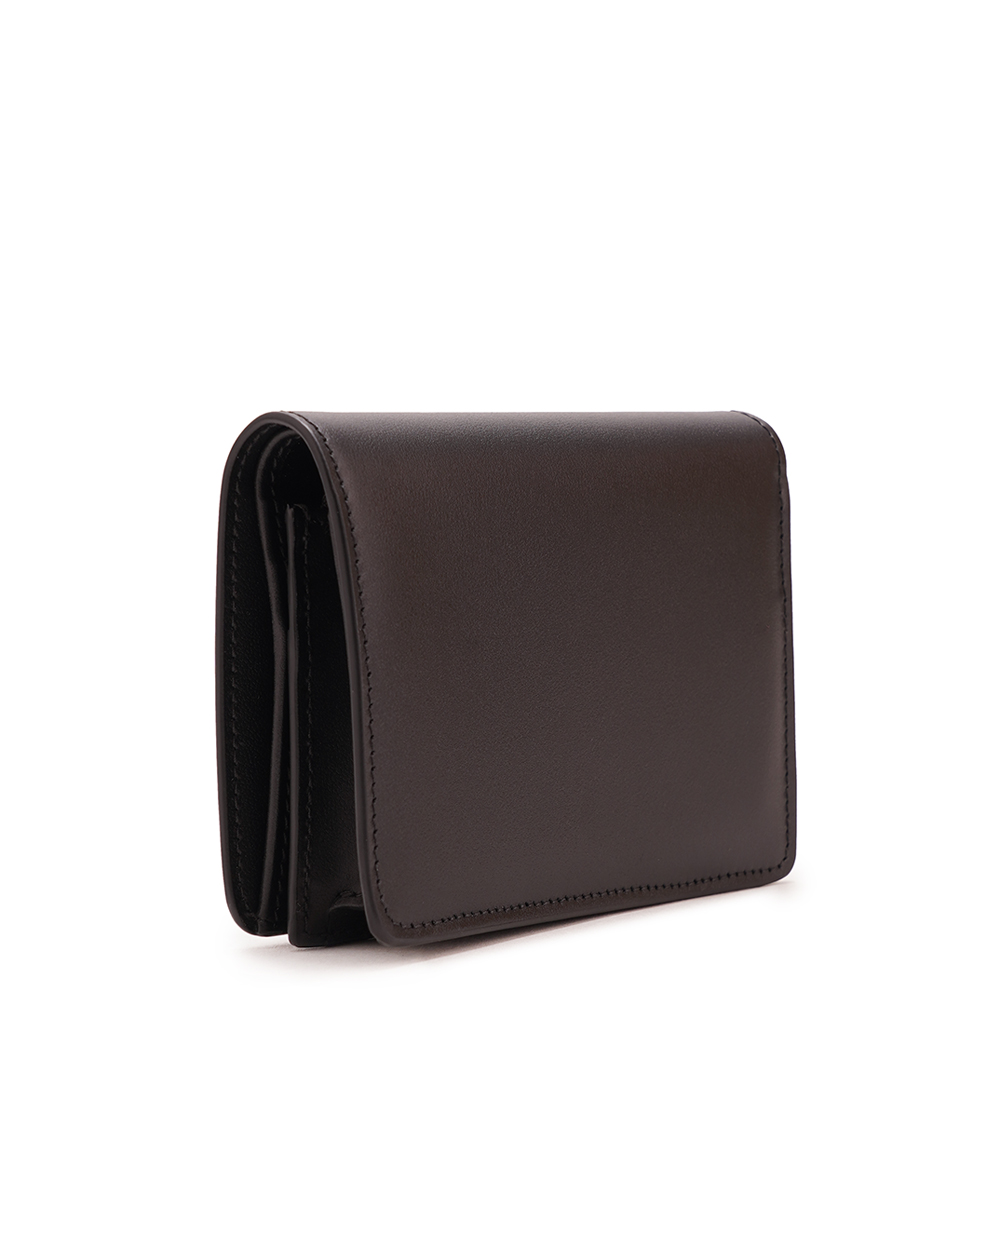 Кожаный кошелек Dolce&Gabbana BI1211-AW576, черный цвет • Купить в интернет-магазине Kameron